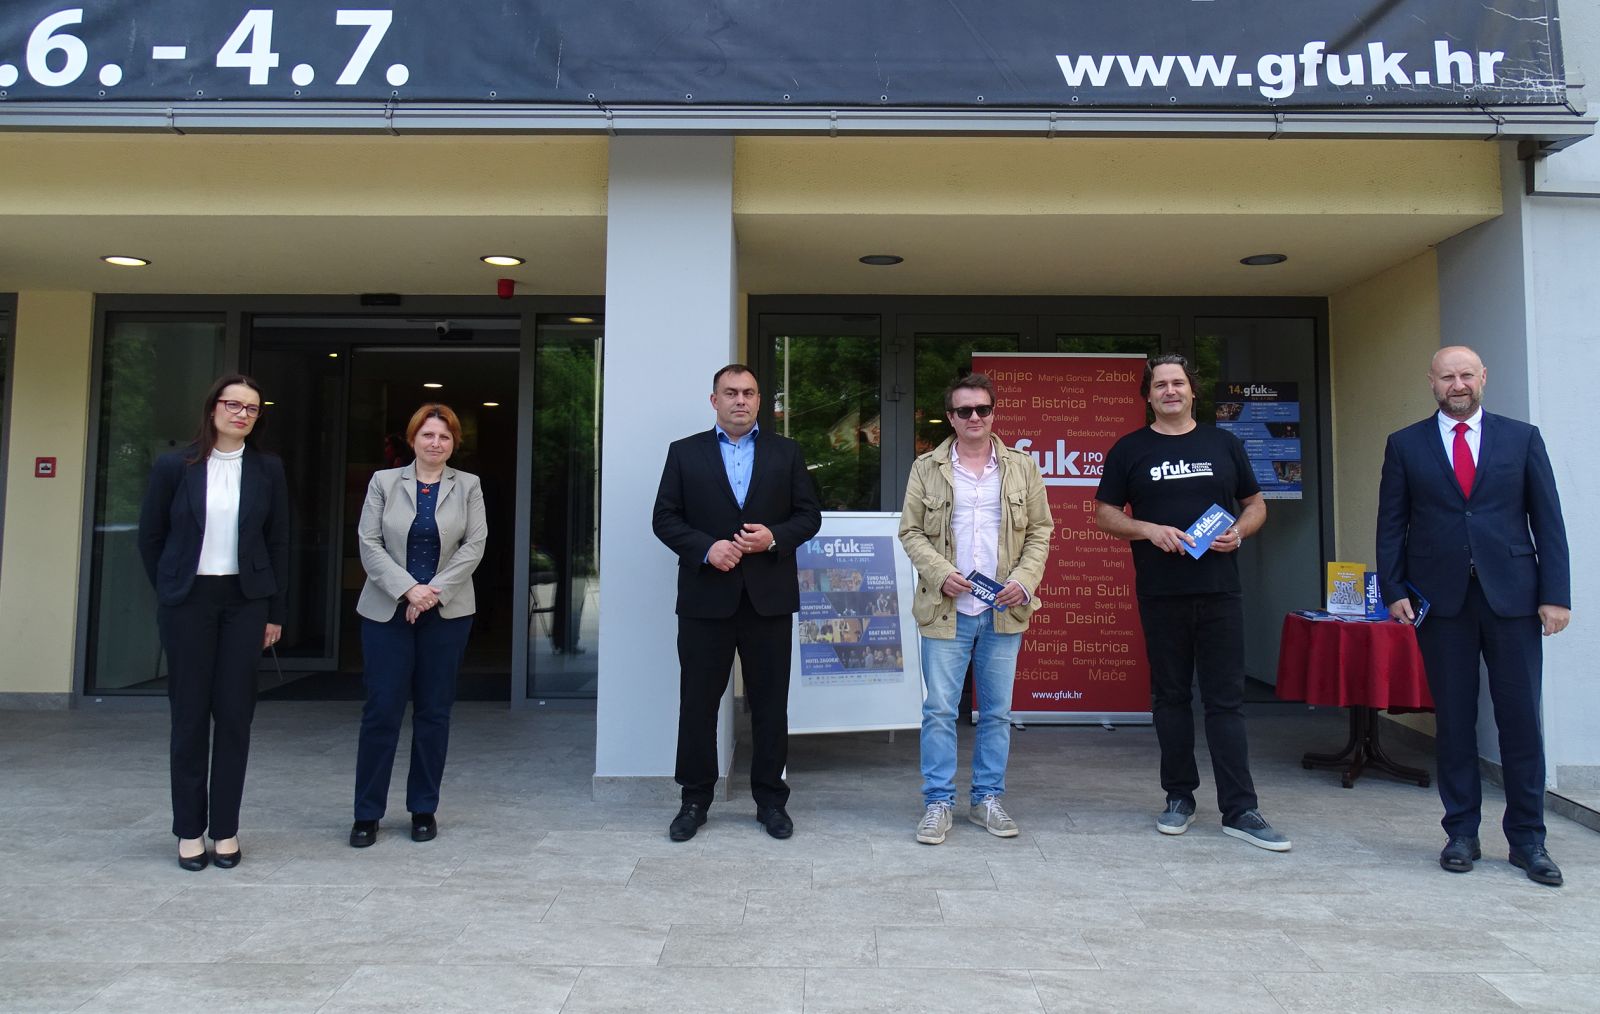 Krapina, 08.06.2021 -   U Krapini je u utorak najavljeno ovogodinje 14. izdanje Glumaèkog festivala u Krapini i po Zagorju, koje u 17 dana donosi 32 predstave i bogat popratni program u 30-ak gradova i mjesta diljem Hrvatskoga zagorja.

Festival æe se po prvi put odravati u ljetnom terminu, od 18. lipnja do 4. srpnja, u sklopu manifestacije Ljeto u Krapini 2021, a organizator je Kulturna udruga GFUK, dok su suorganizatori Puèko otvoreno uèilite i Turistièka zajednica grada Krapine. Osim u Krapinsko-zagorskoj, predstave æe biti igrane i u dijelu Varadinske te Zagrebaèke upanije, ali i izvan granica Hrvatske. foto HINA/ Sinia KALAJDIJA/ ik